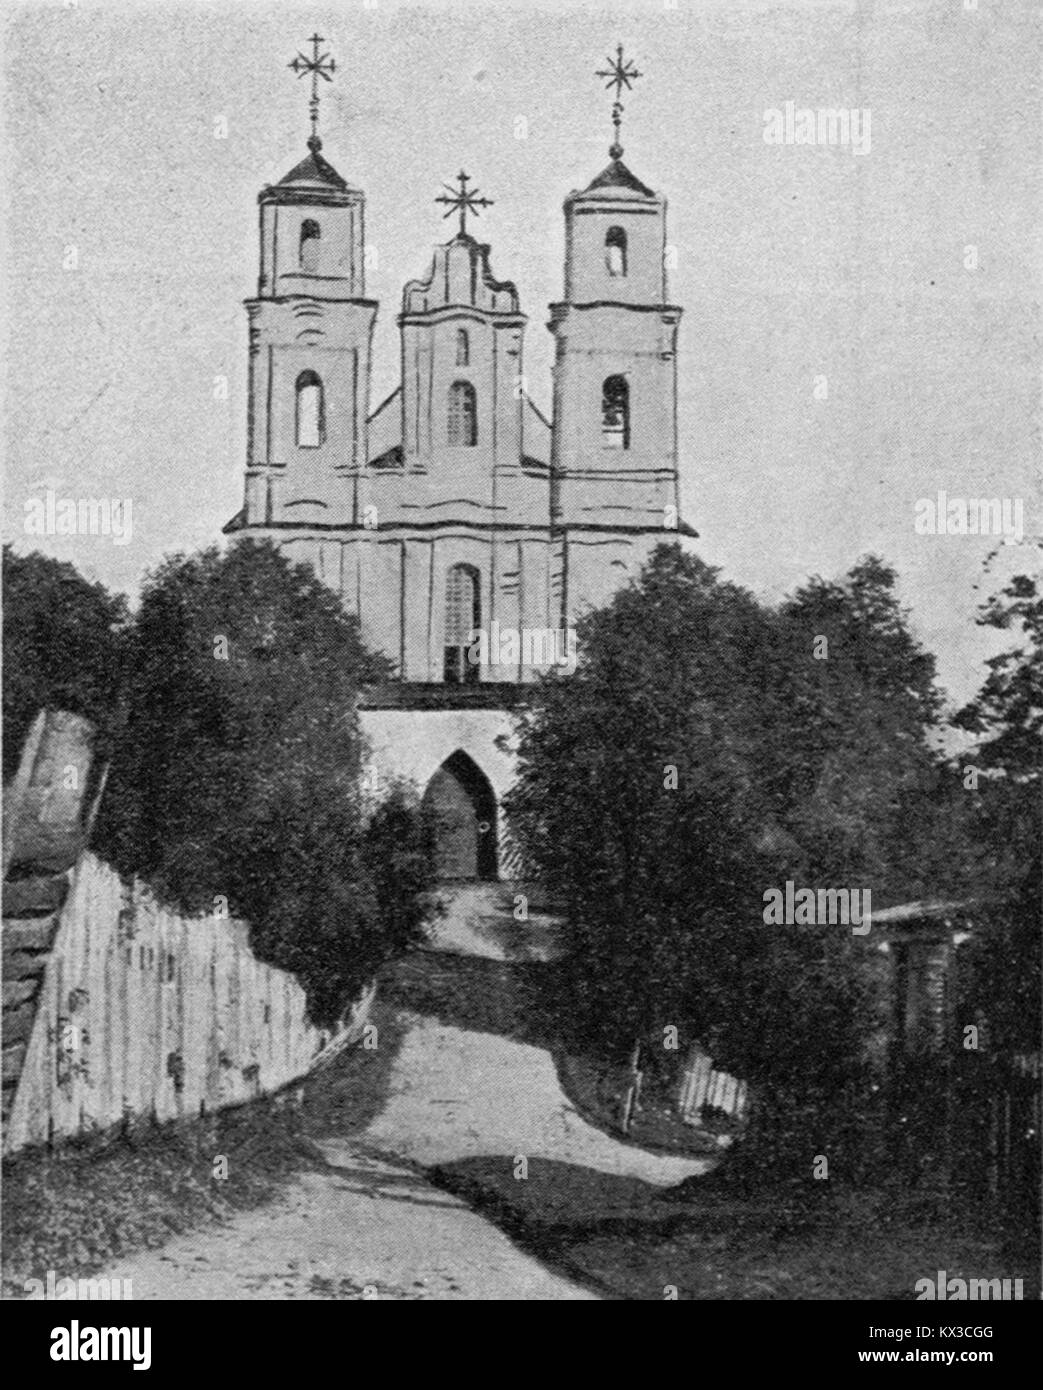 Druja, Prydrujsk. Друя, Прыдруйск (1913 Stock Photo - Alamy